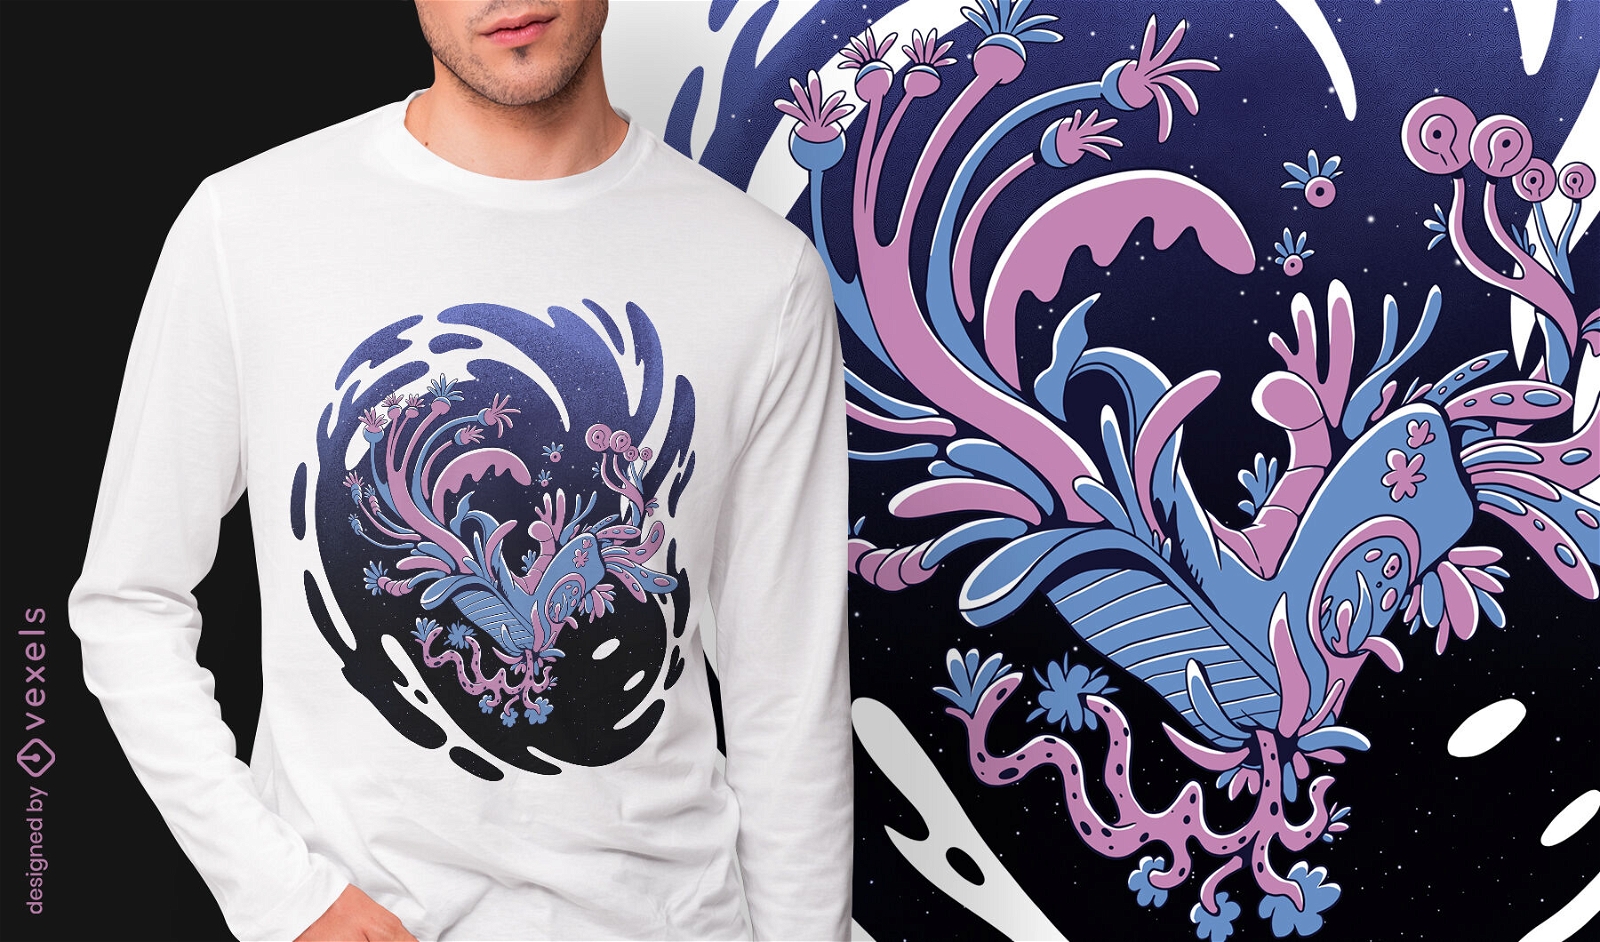 Bota design de camiseta psd monstro espacial floral